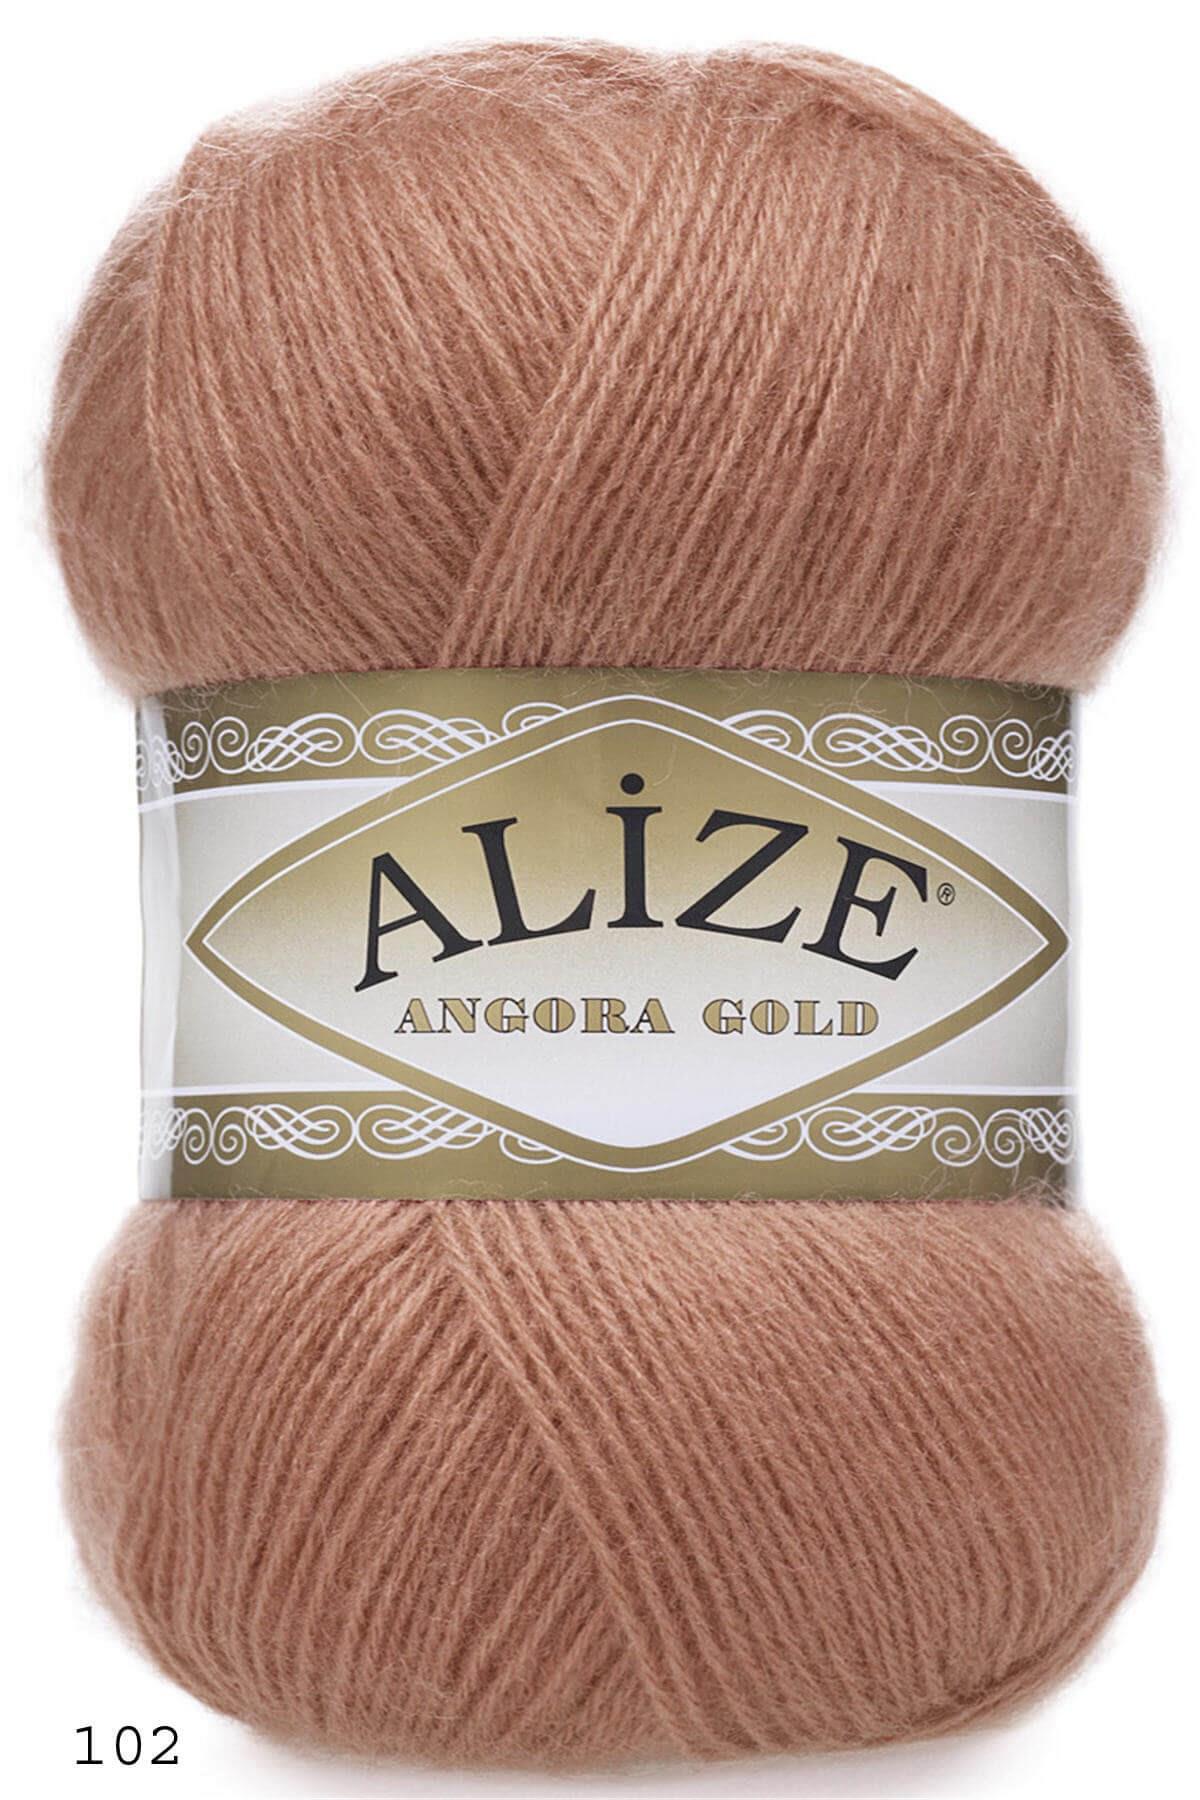 Alize Angora Gold (102 Soğan Kabuğu) | El Örgü İplikleri | Tekstilland